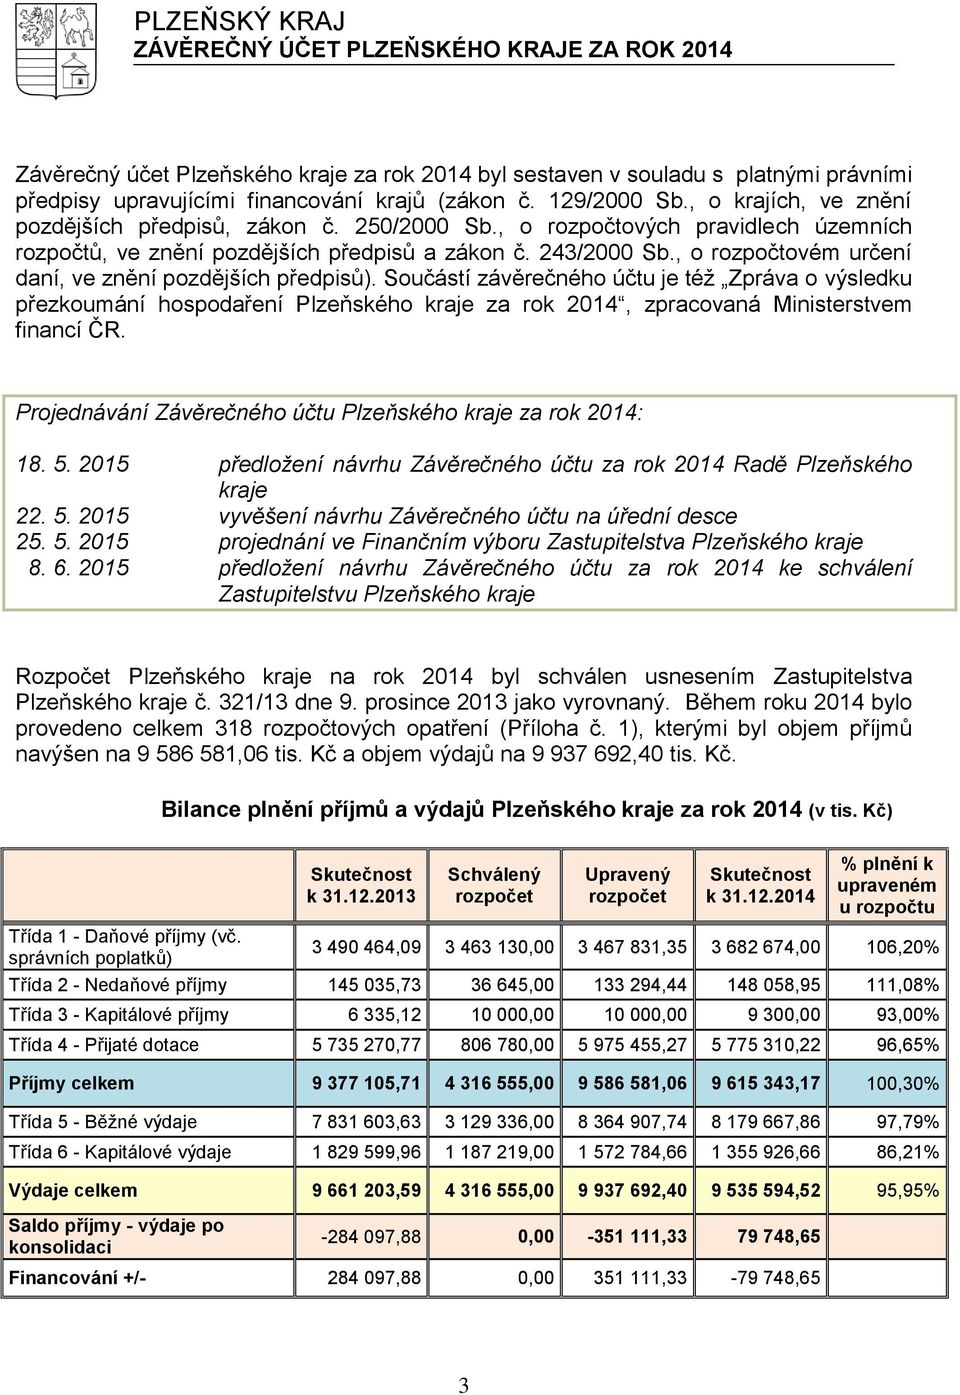 Součástí závěrečného účtu je též Zpráva o výsledku přezkoumání hospodaření Plzeňského kraje za rok 2014, zpracovaná Ministerstvem financí ČR.